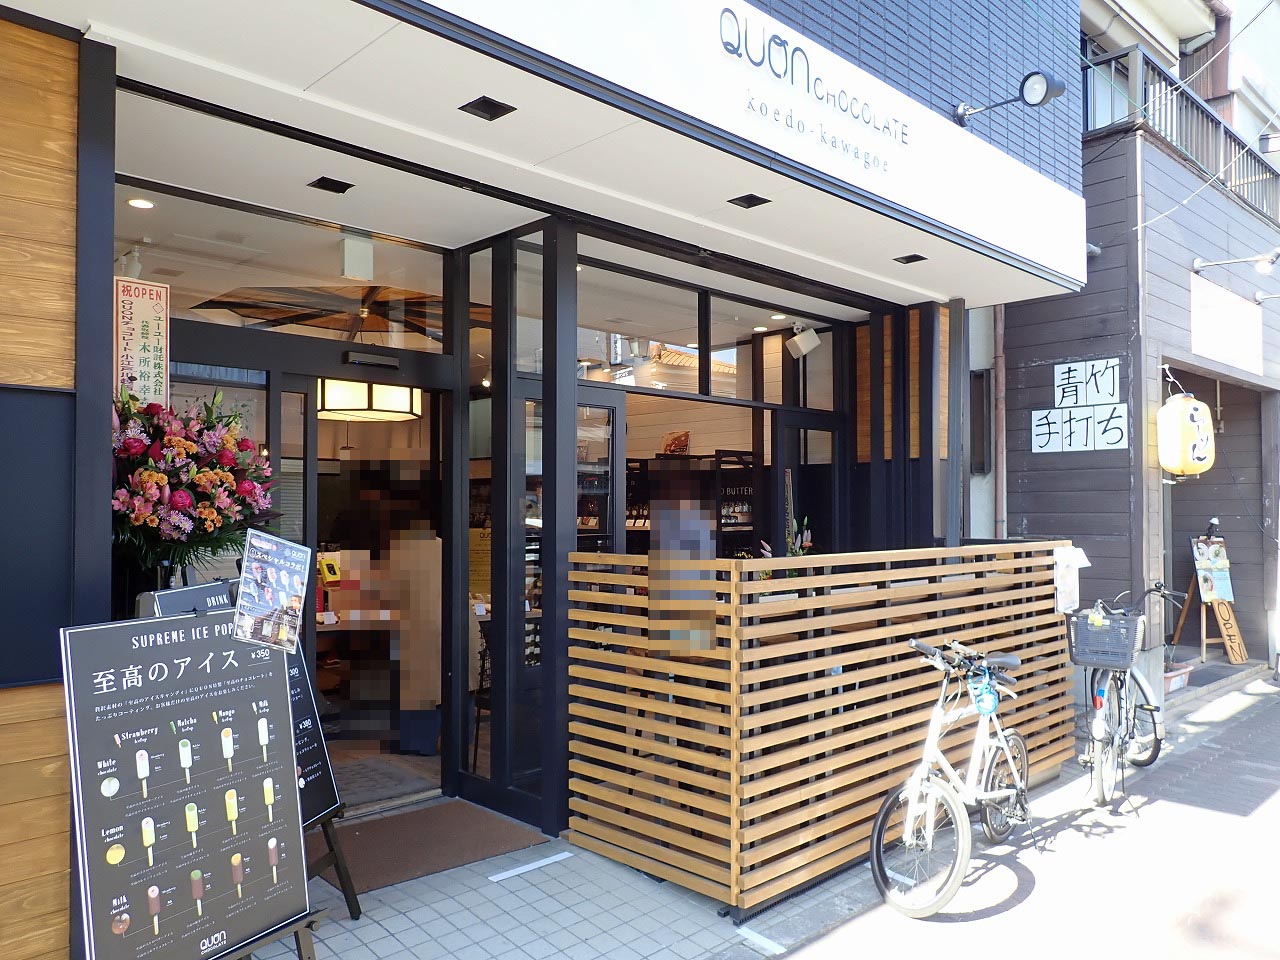 2020年11月にオープンした『久遠チョコレート・小江戸川越店』